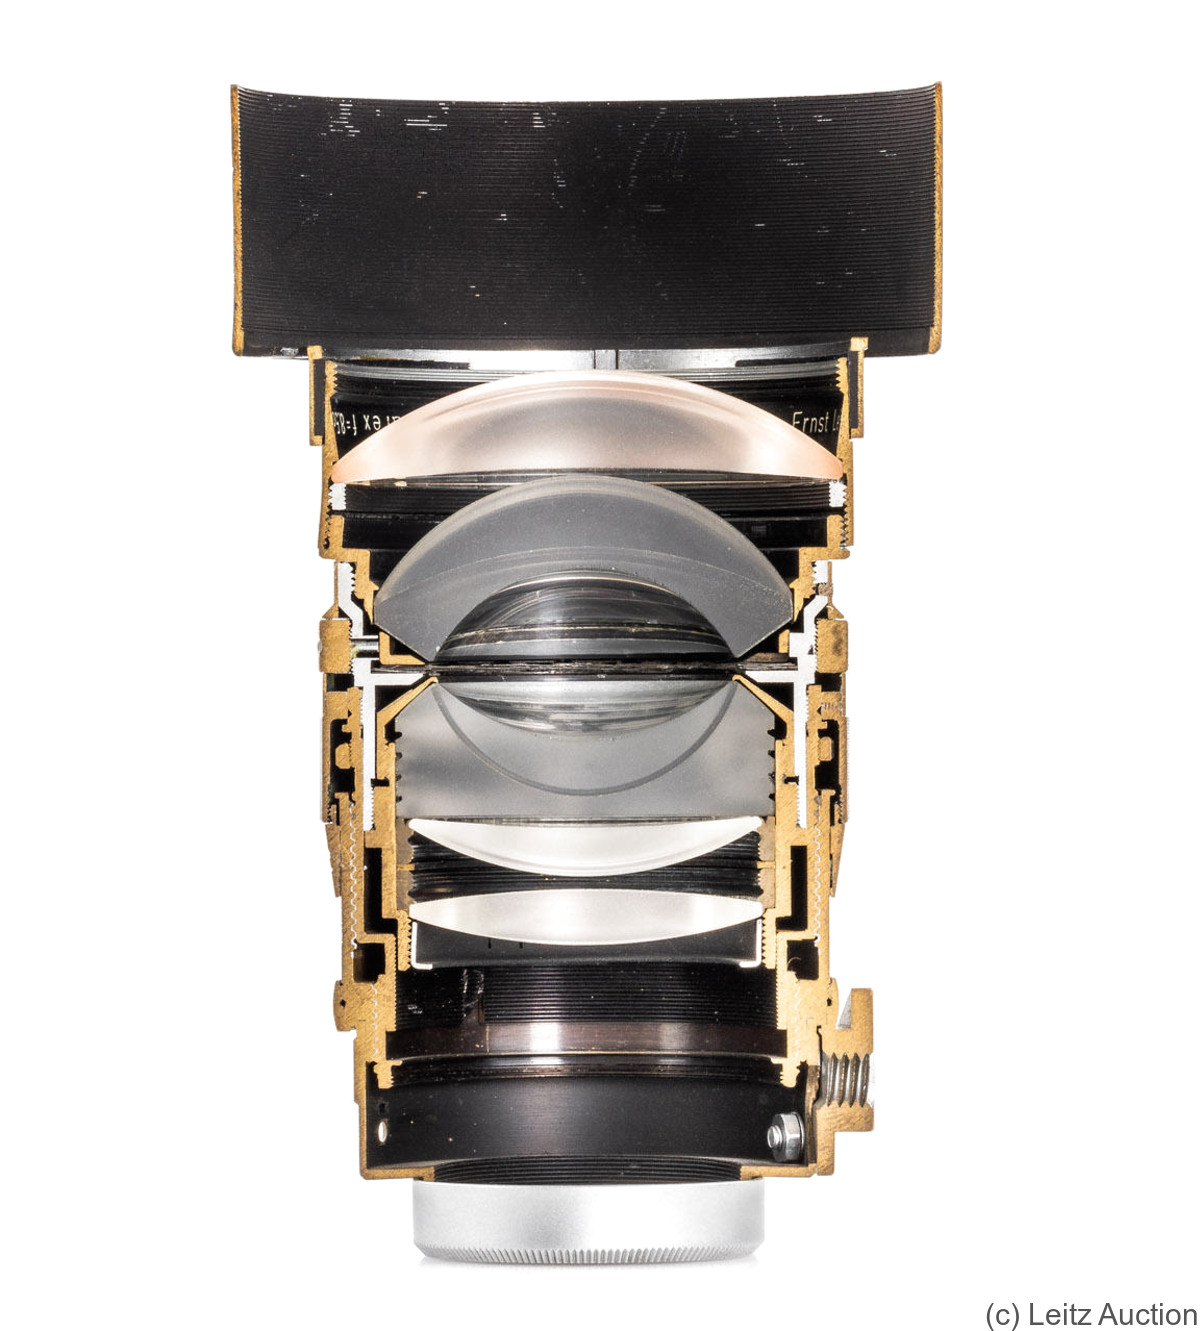 Leitz: 85mm (8.5cm) f1.5 Summarex (SM, chrome, cutaway) camera